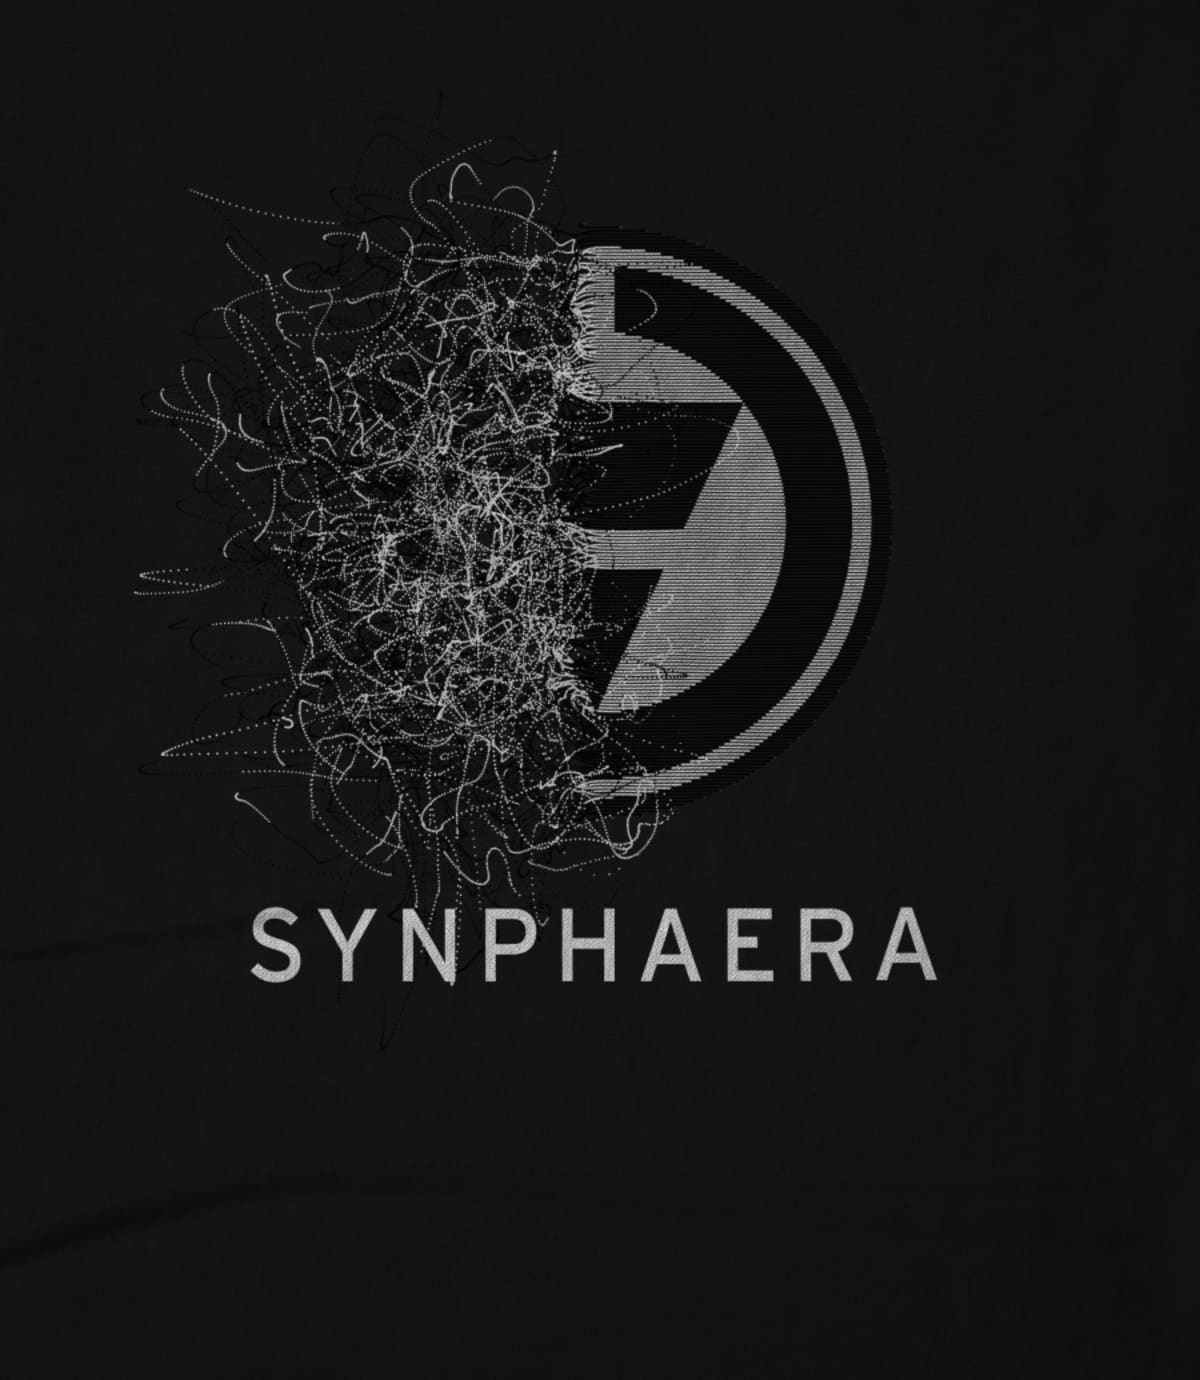 Synphaera synphaera new design 7 1521850308